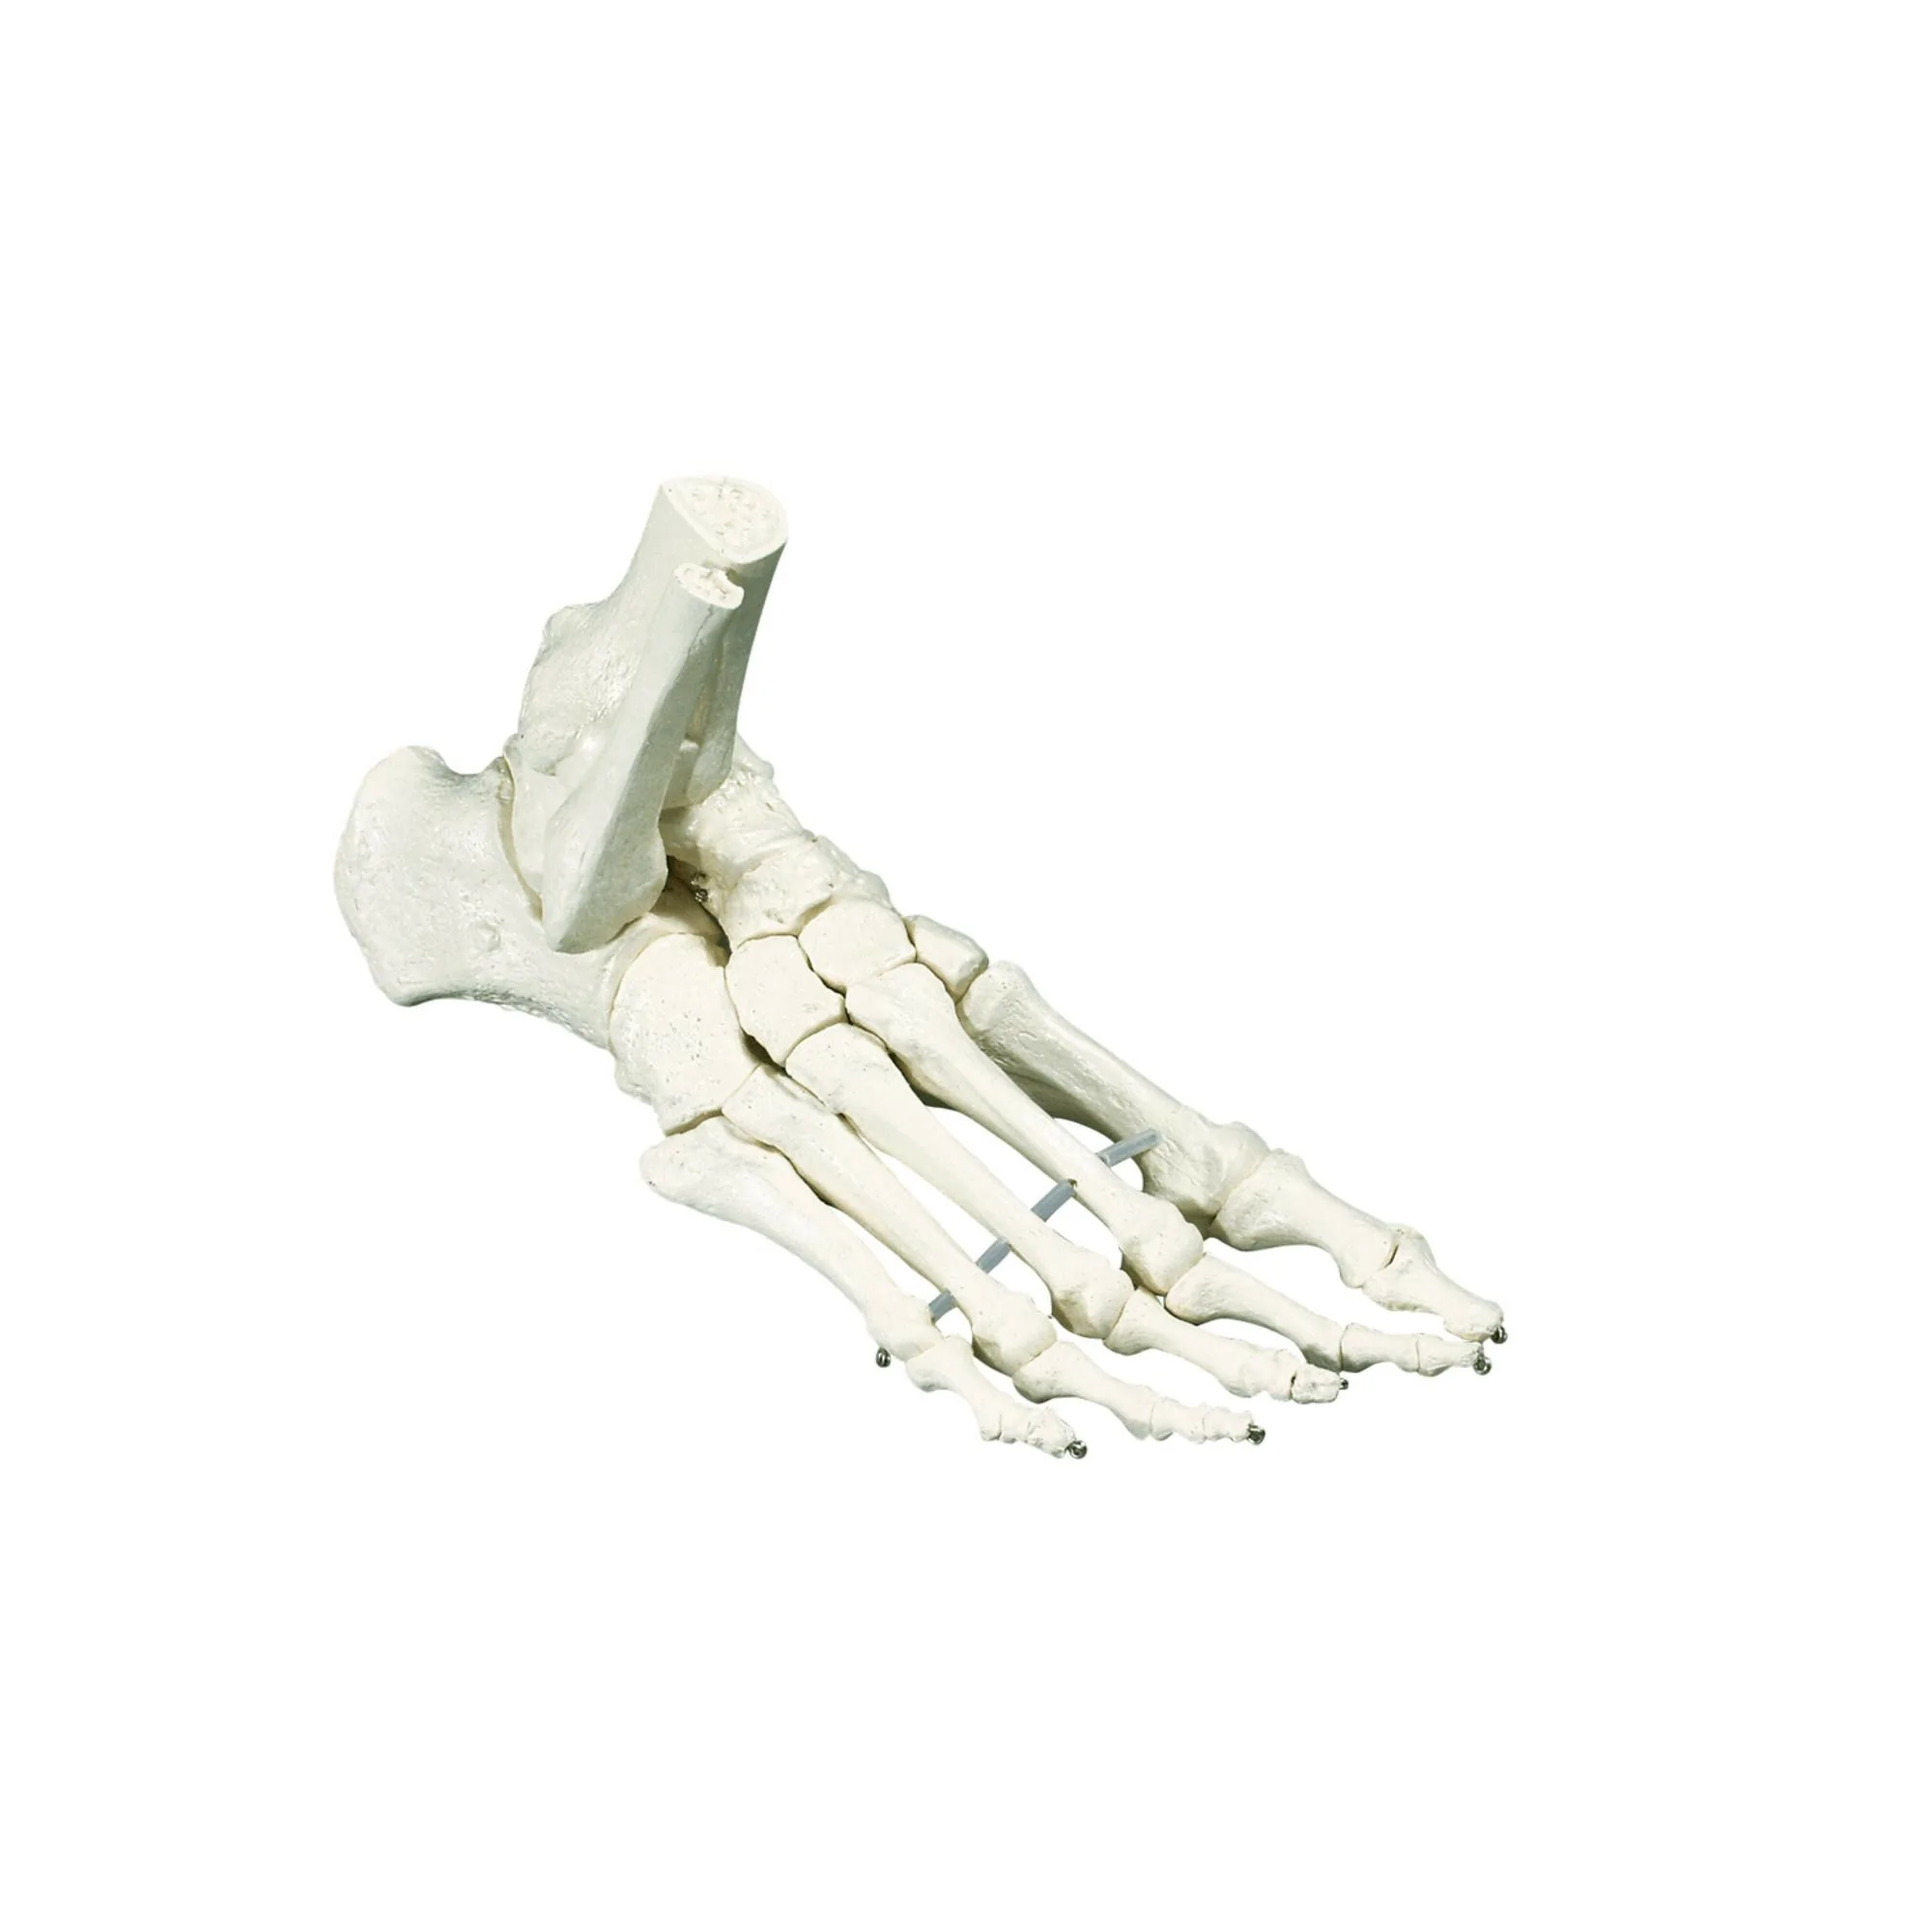 Squelette classique - Pied avec début tibia - Ruck